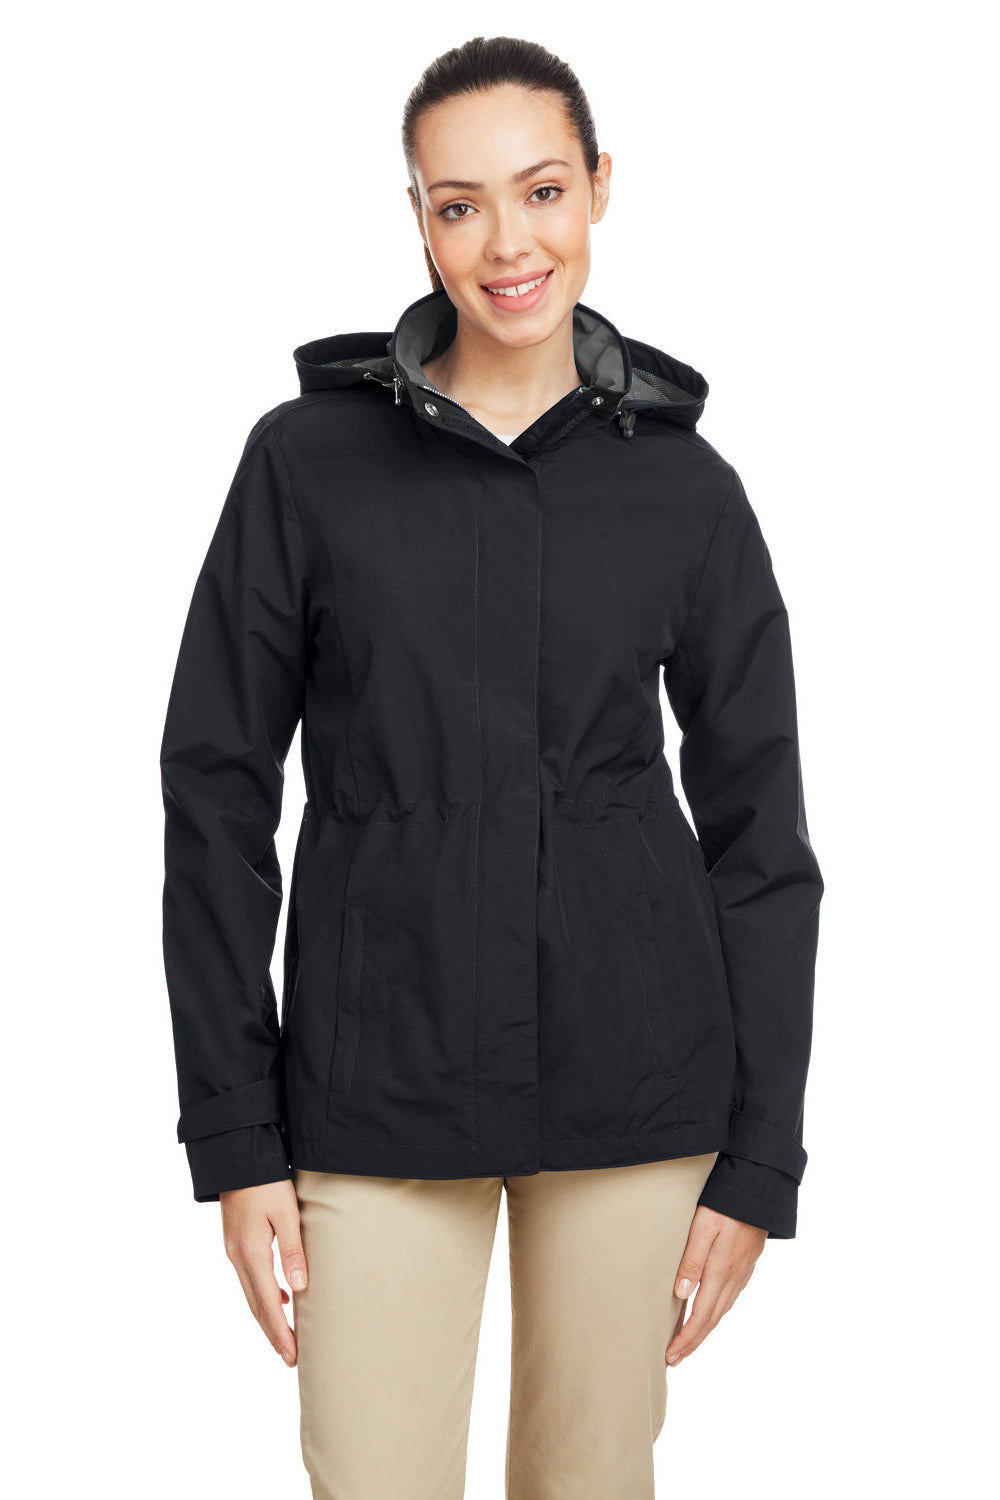 Nautica N17183 Womens Voyage Full Zip Hooded Jacket Black Front